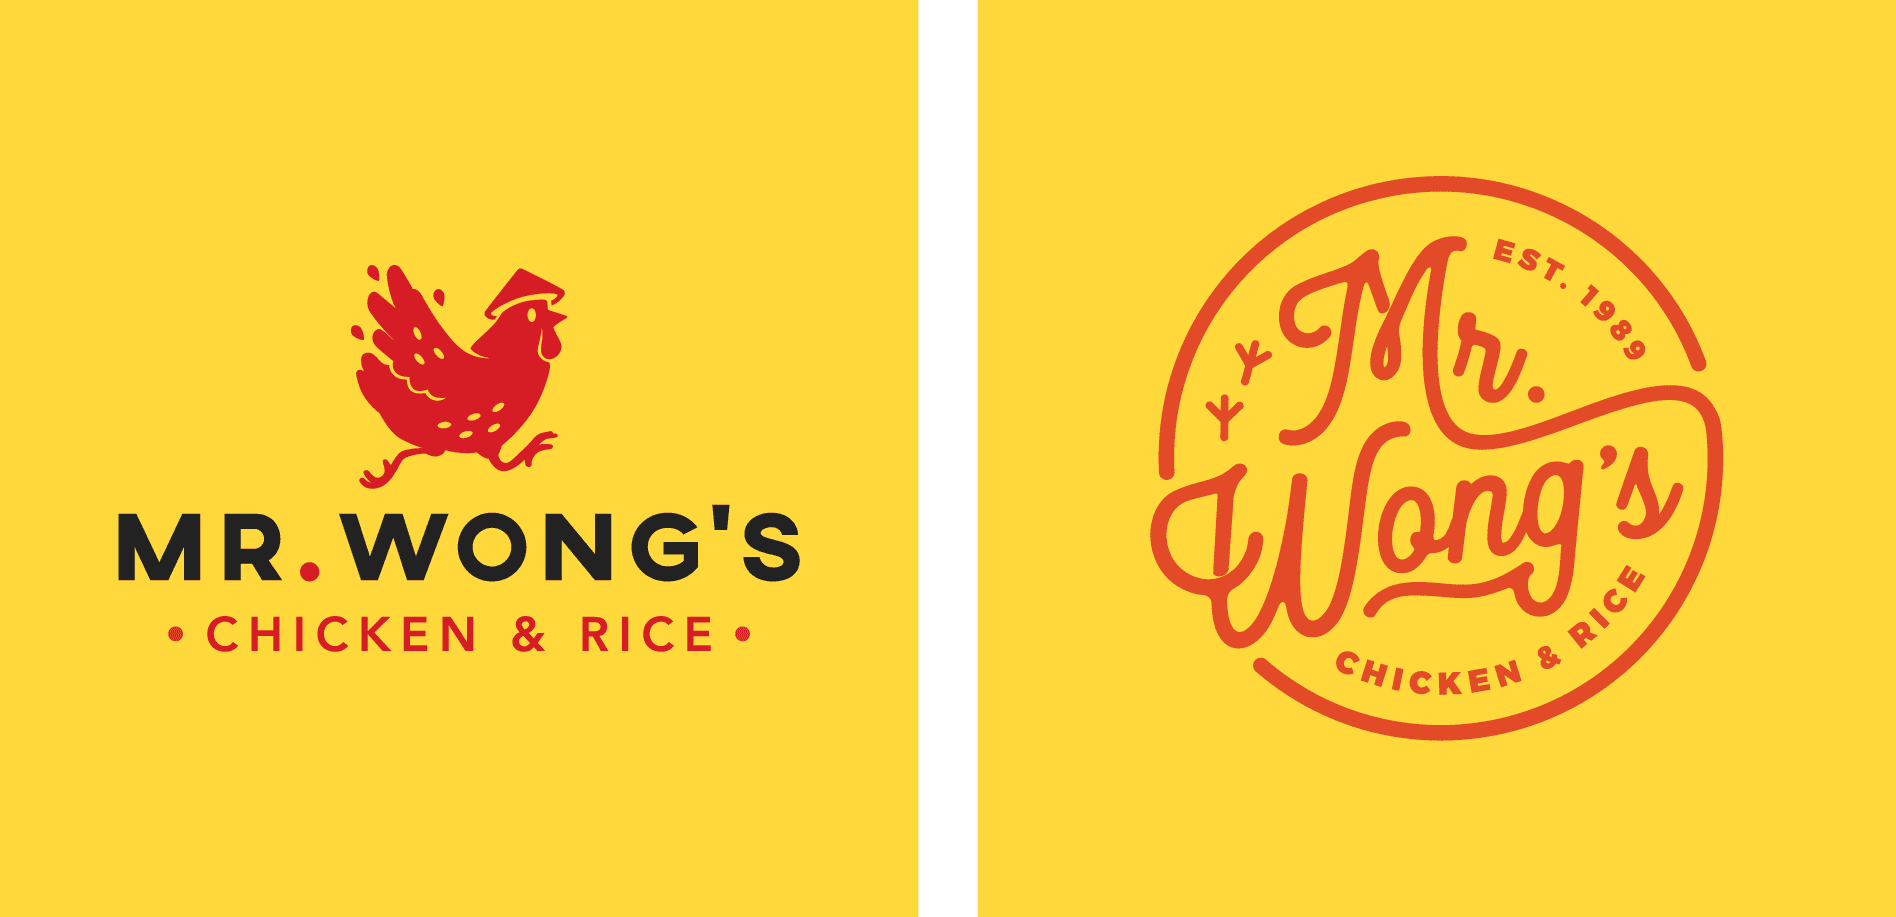 chicken restaurant logo designs